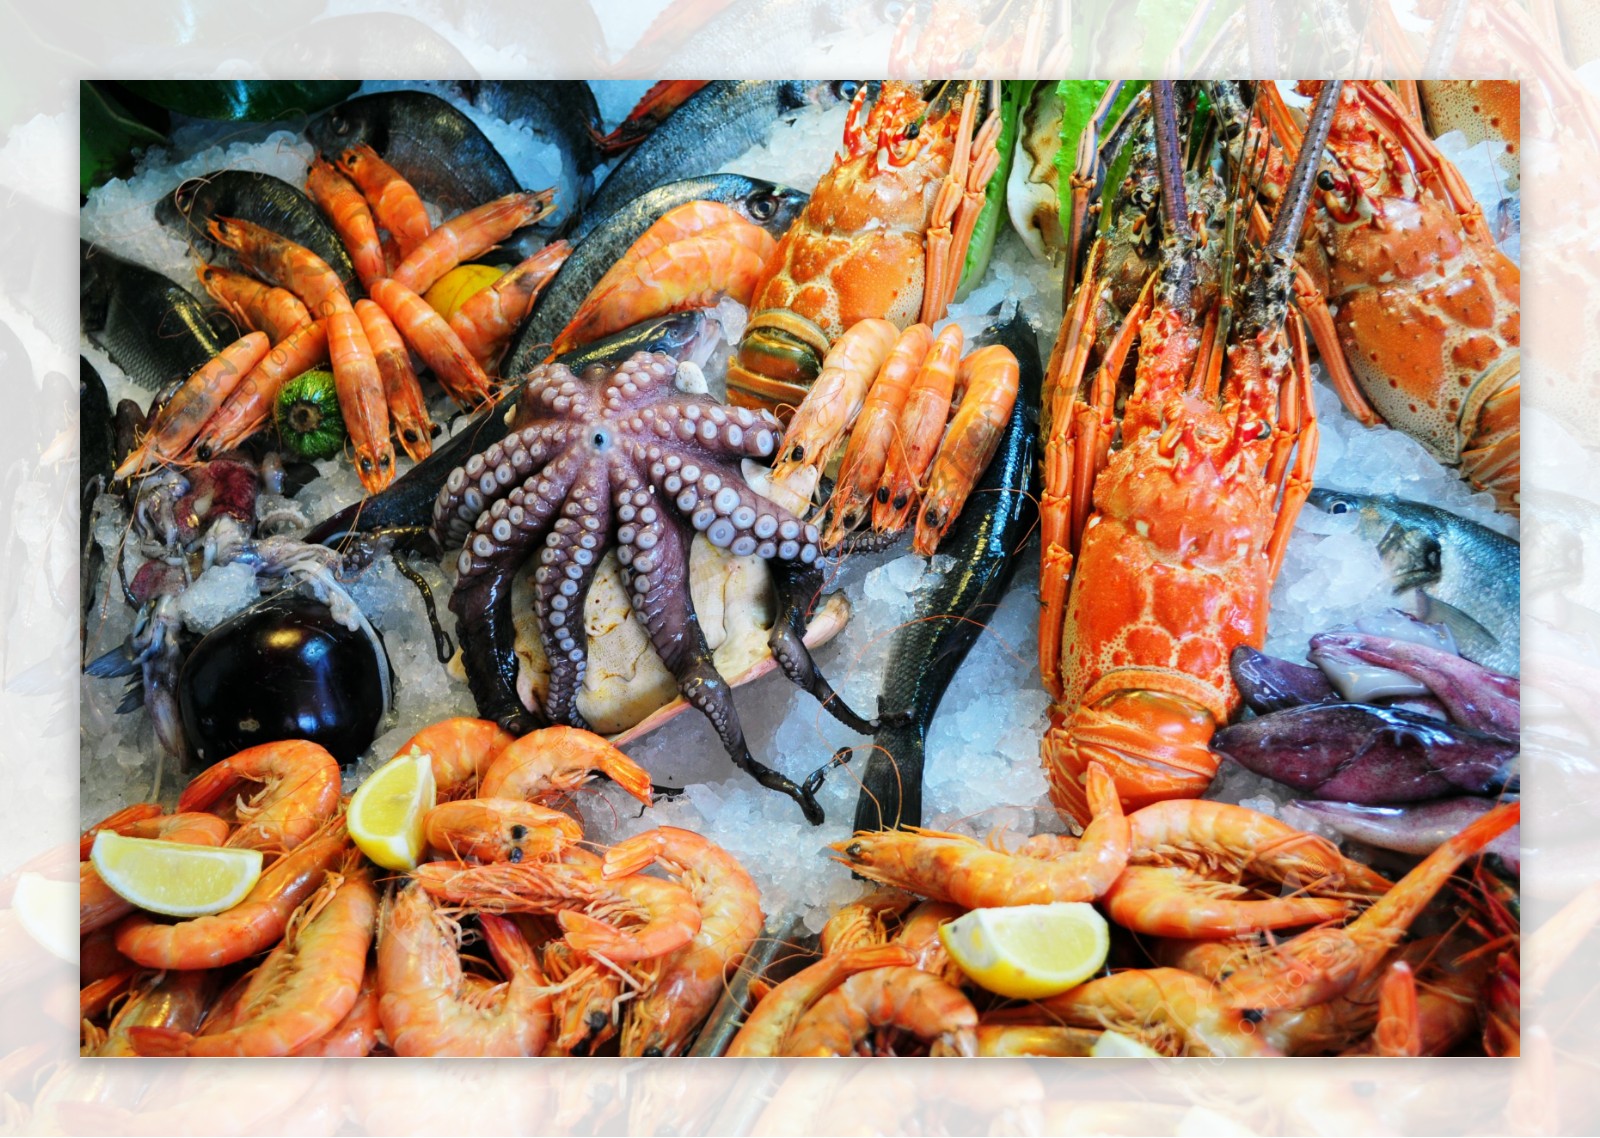 海鲜食物大餐图片